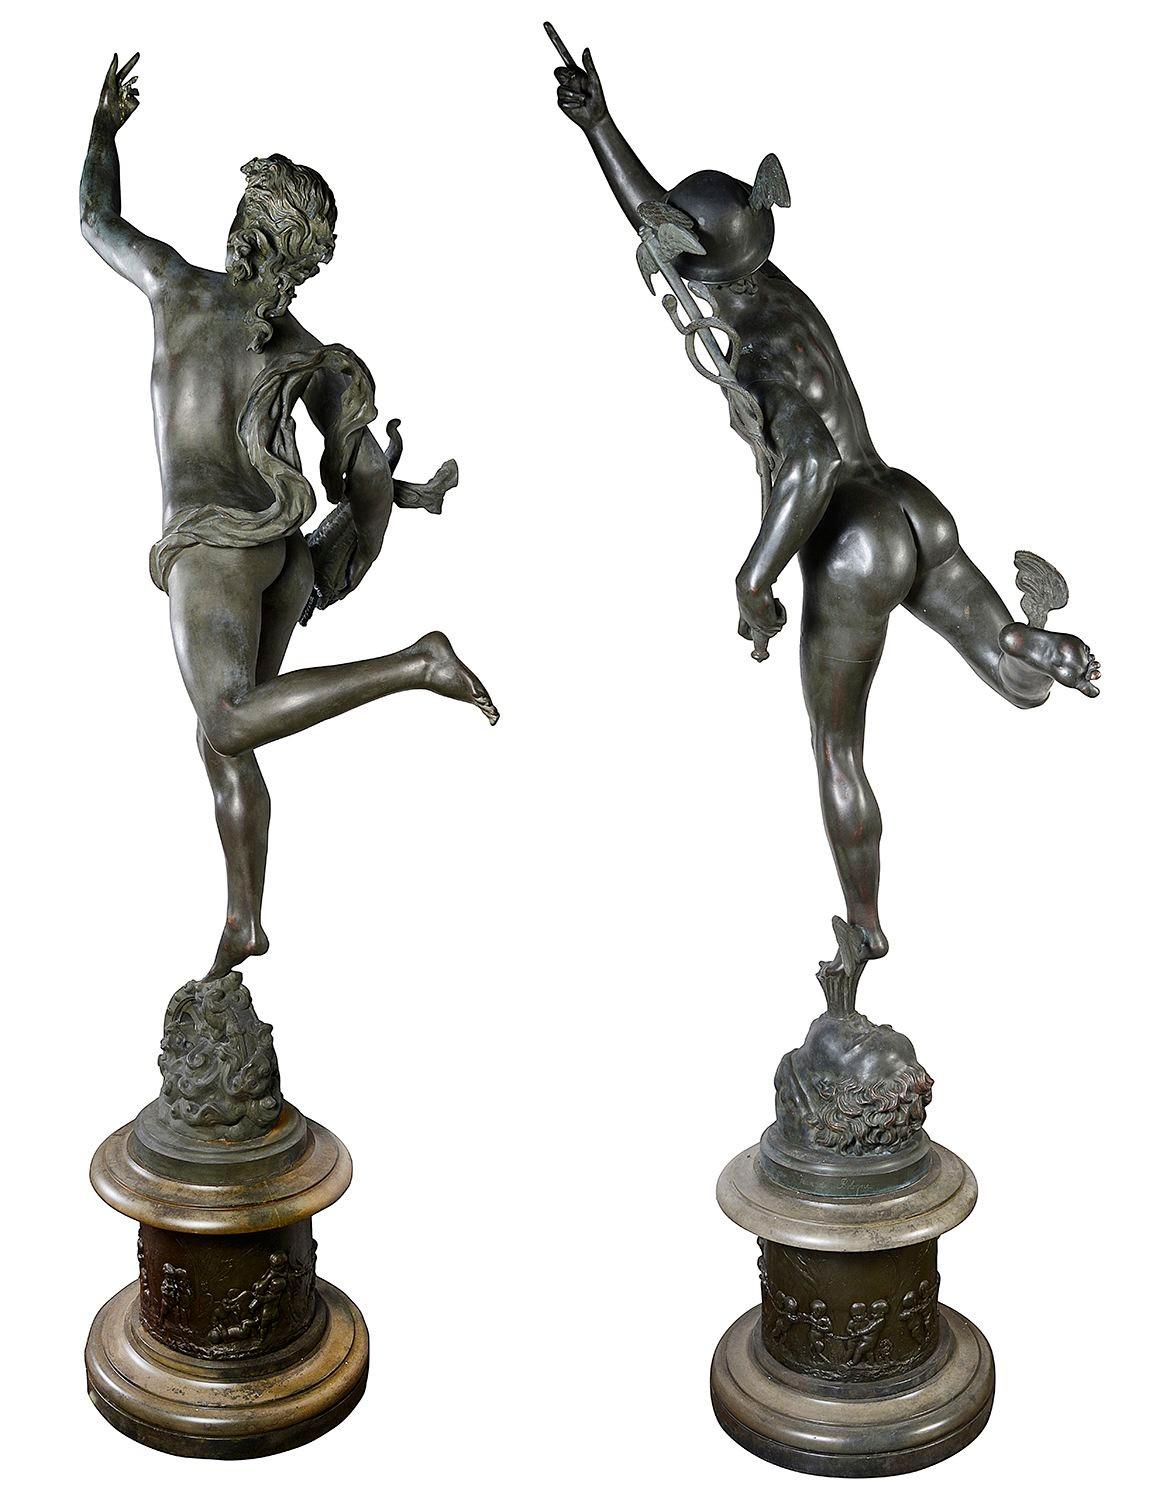 Une paire merveilleusement impressionnante de statues de Mercure et de Fortuna en bronze patiné vert-de-gris du XIXe siècle, d'après Jean de Bologne, chacune reposant sur des piédestaux circulaires avec des scènes de putti jouant avec des béliers et